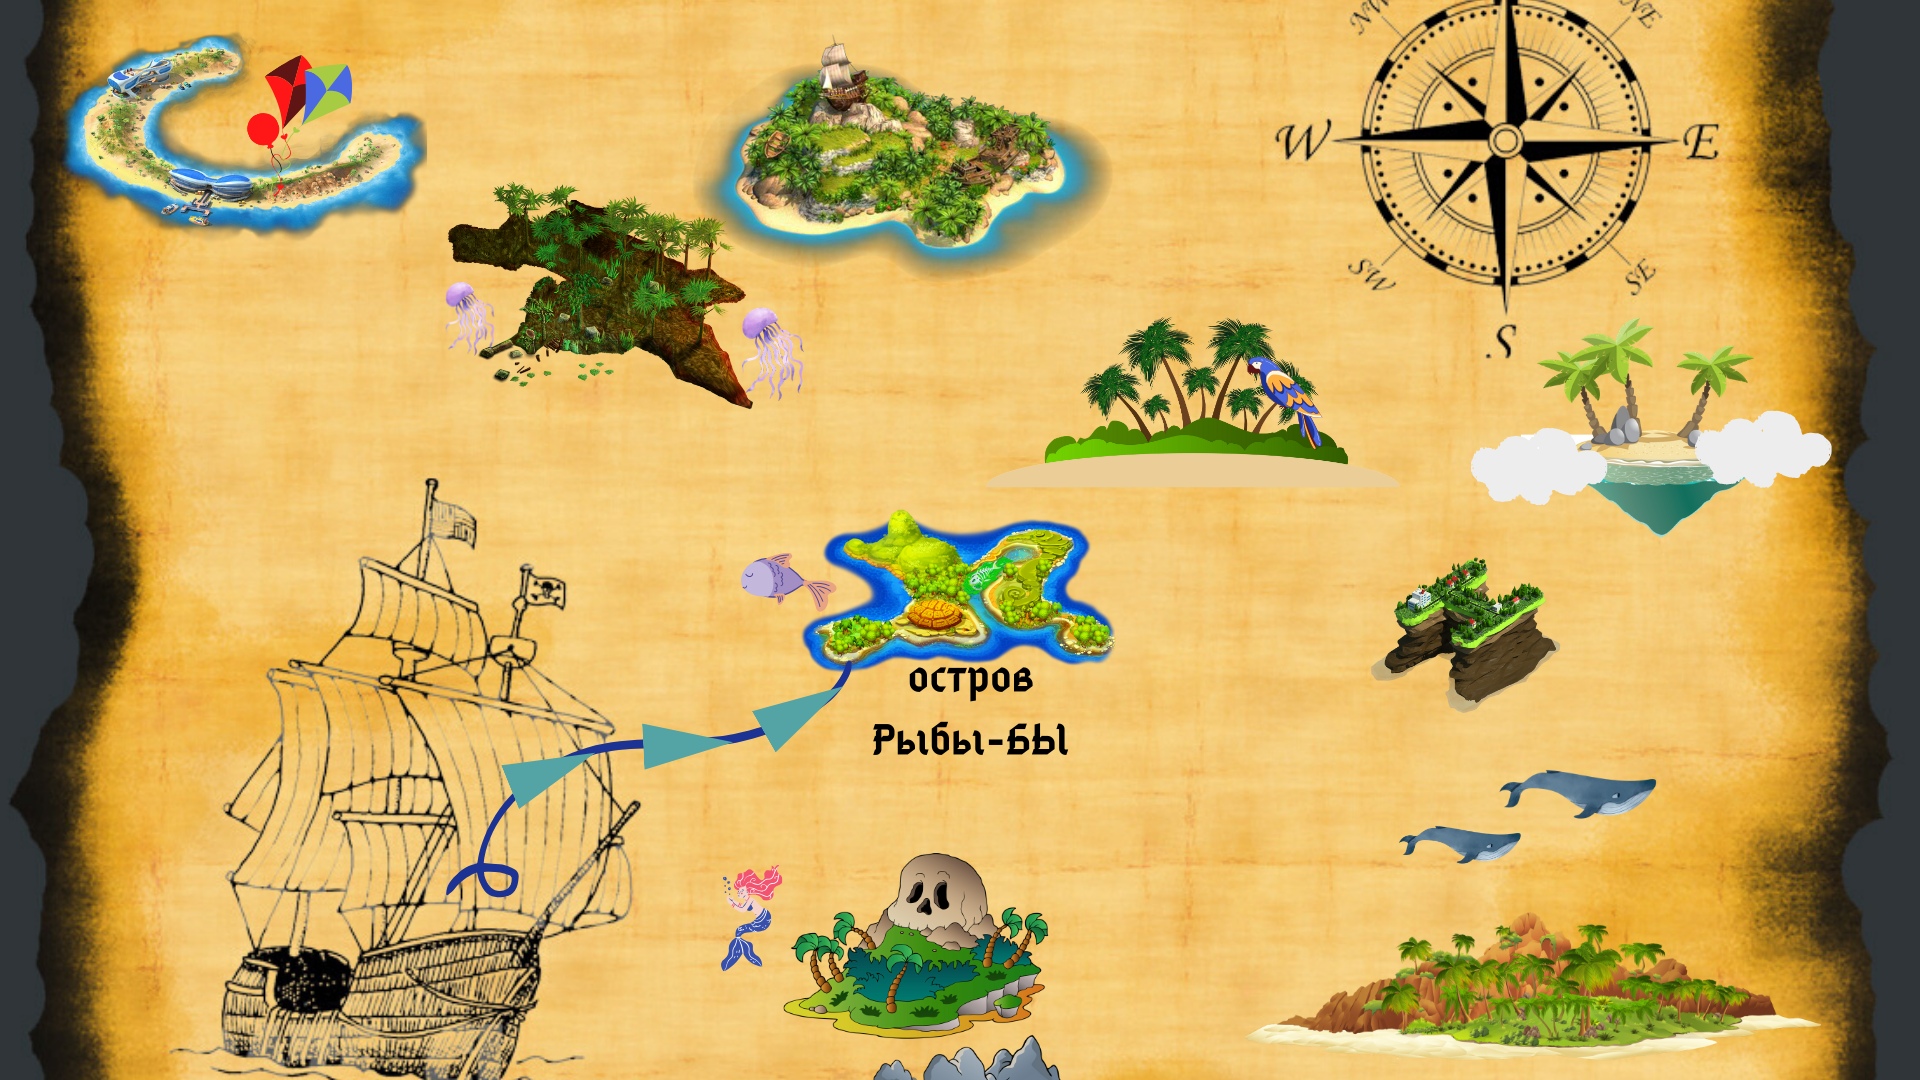 Игры путешествия для школьников. Карта для игры путешествия. Карта путешествия для детей. Карта путешествия по островам для детей. Морская карта для детей.